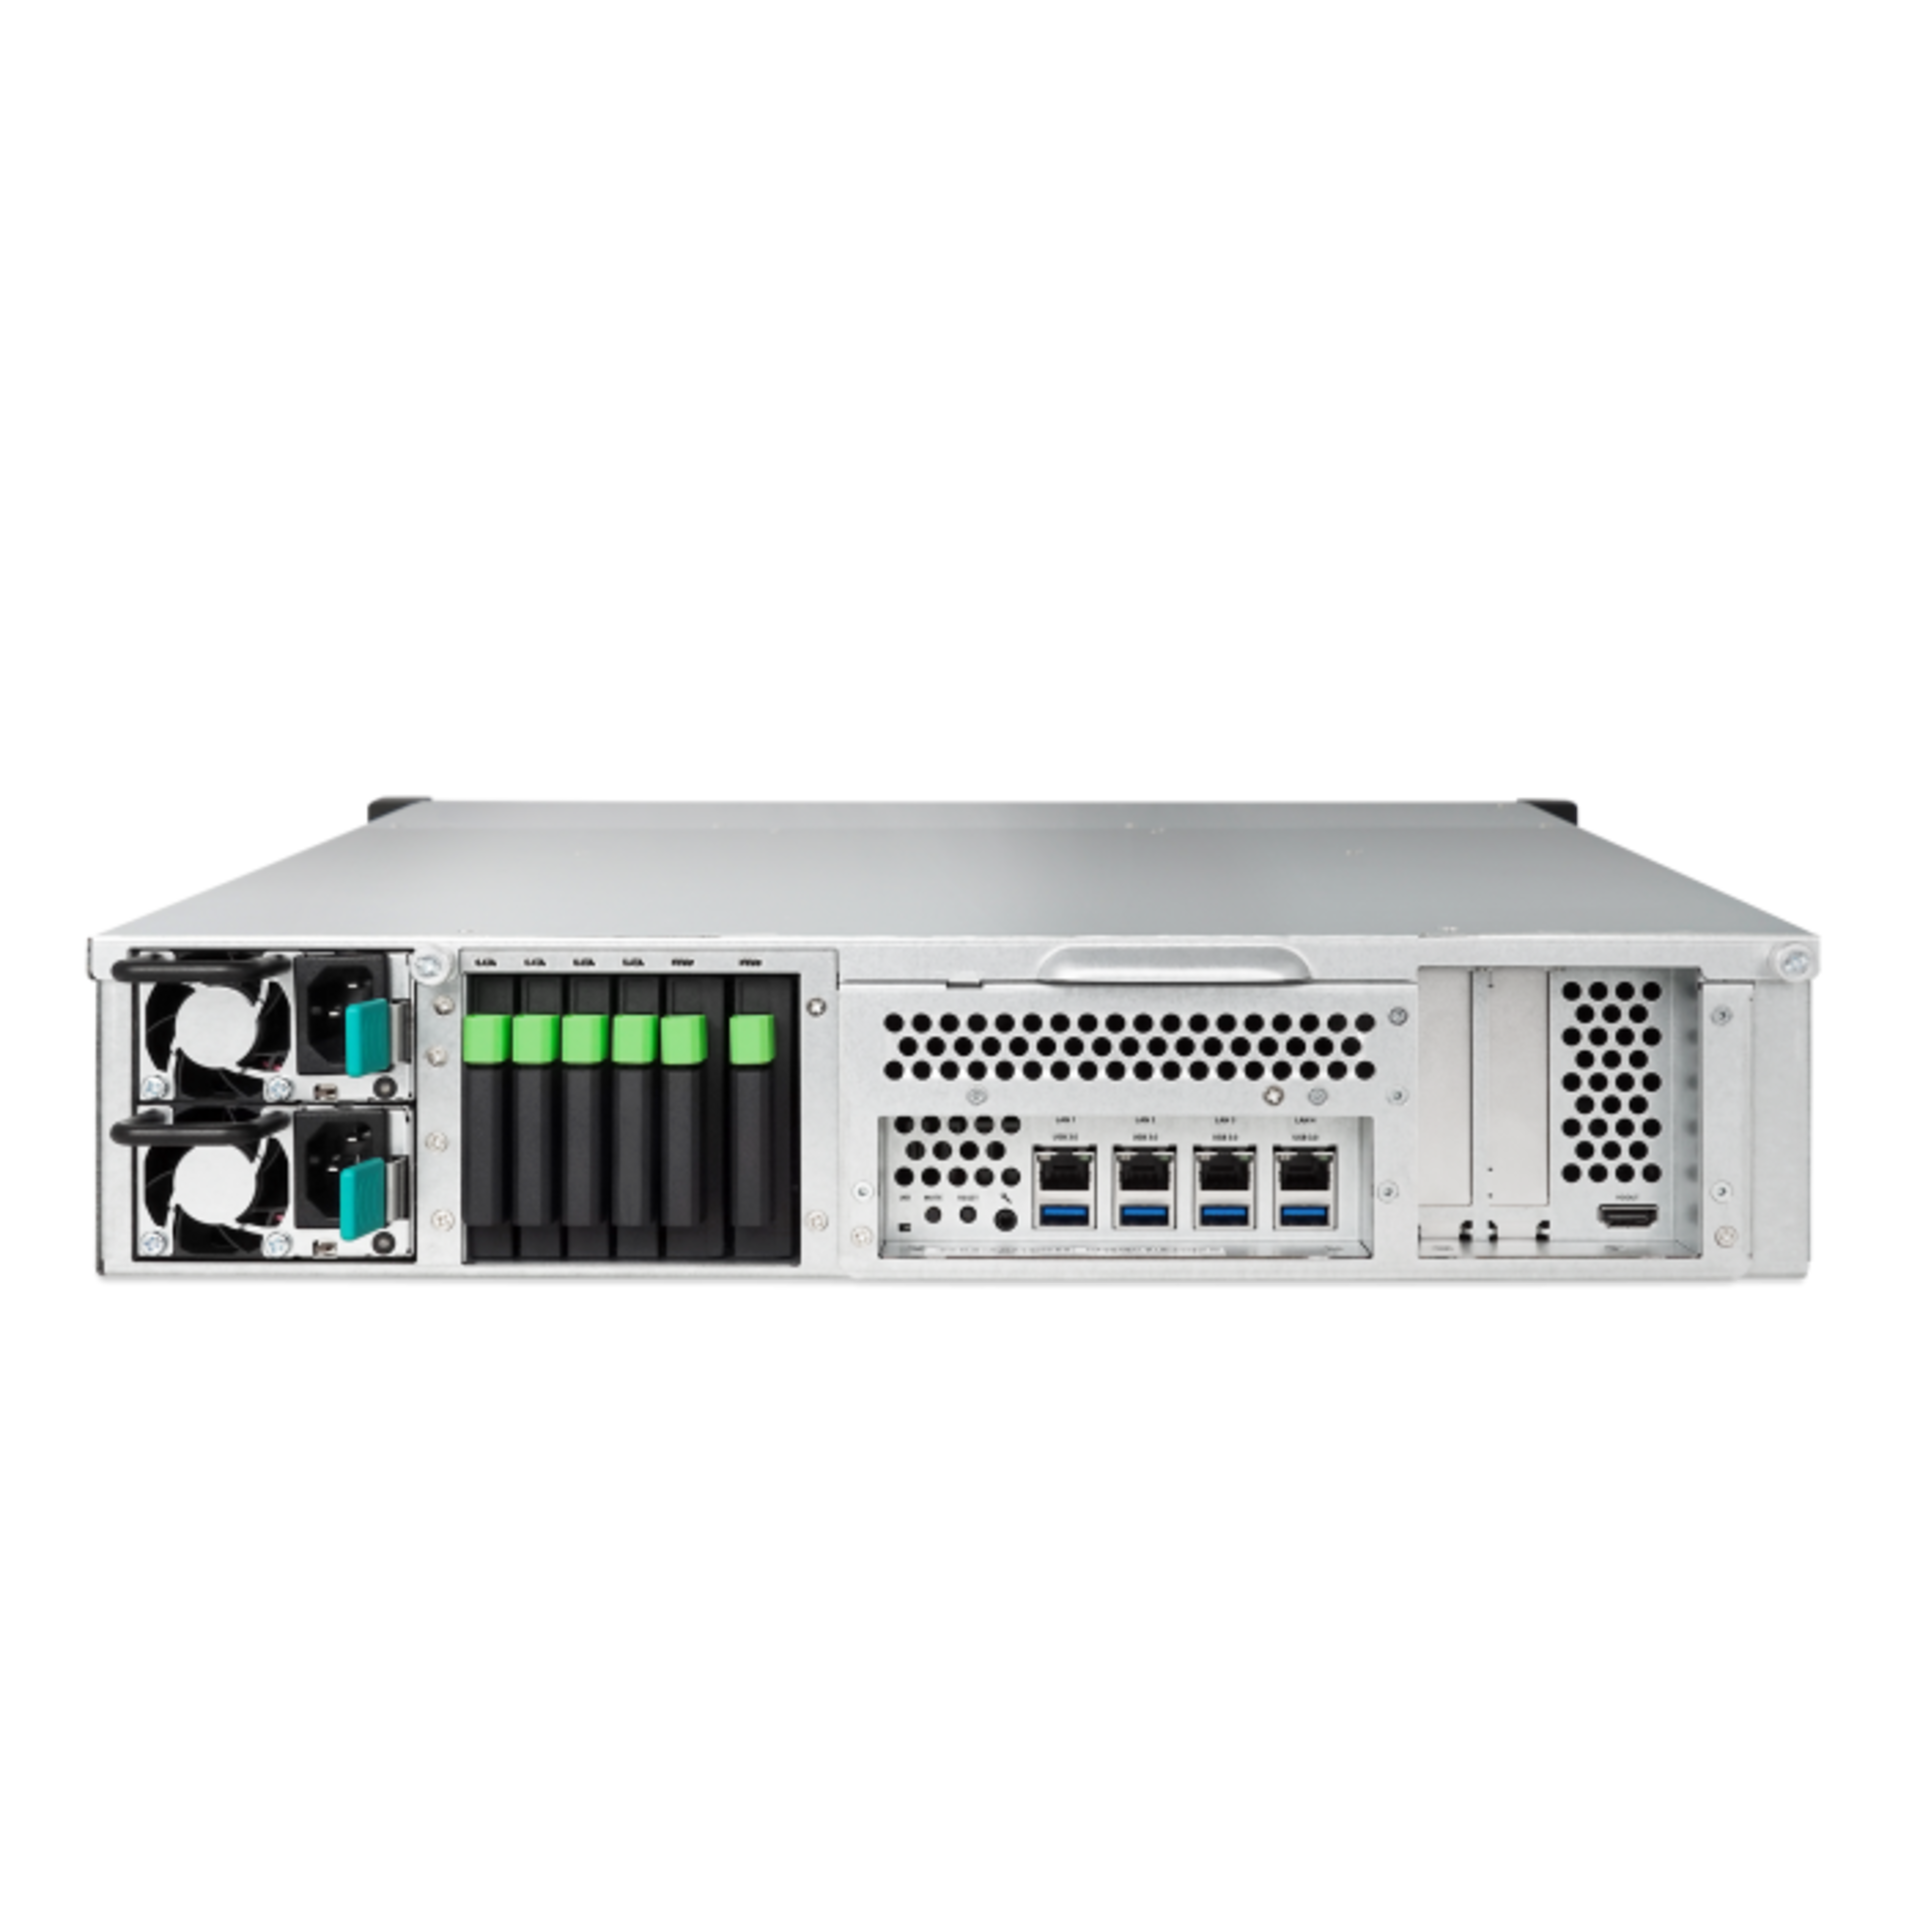 NAS-сервер Qsan XCubeNAS XN5012R-EU